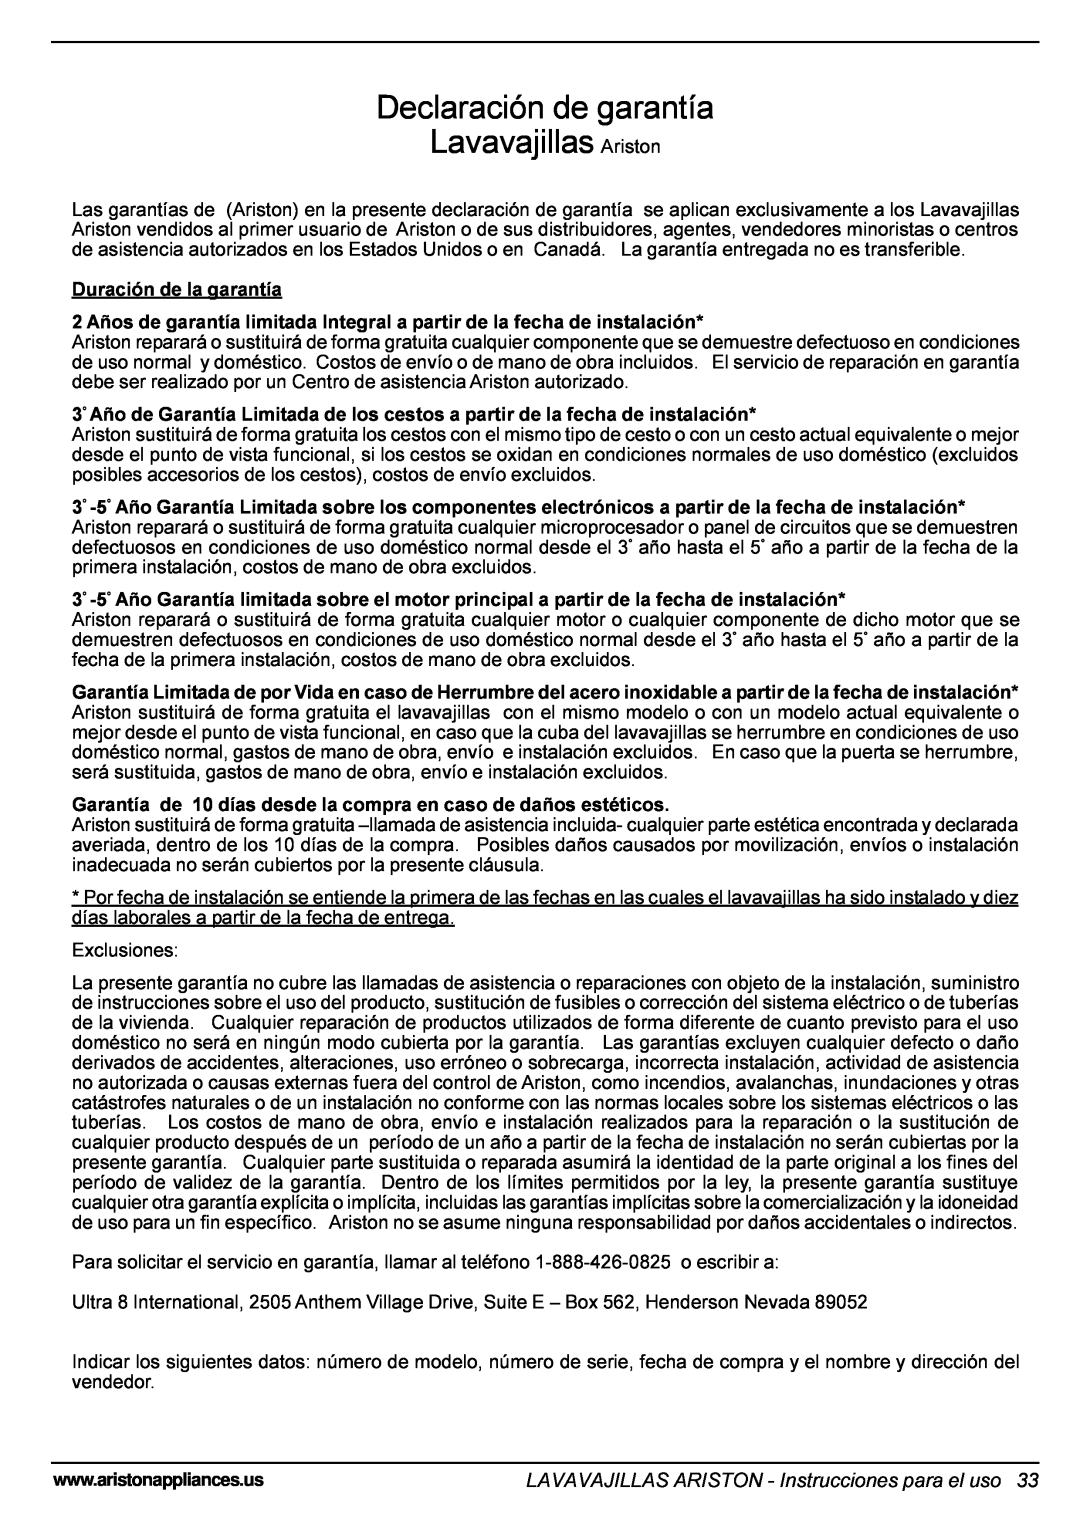 Ariston LL 64 B-S-W manual Declaración de garantía Lavavajillas Ariston, LAVAVAJILLAS ARISTON - Instrucciones para el uso 